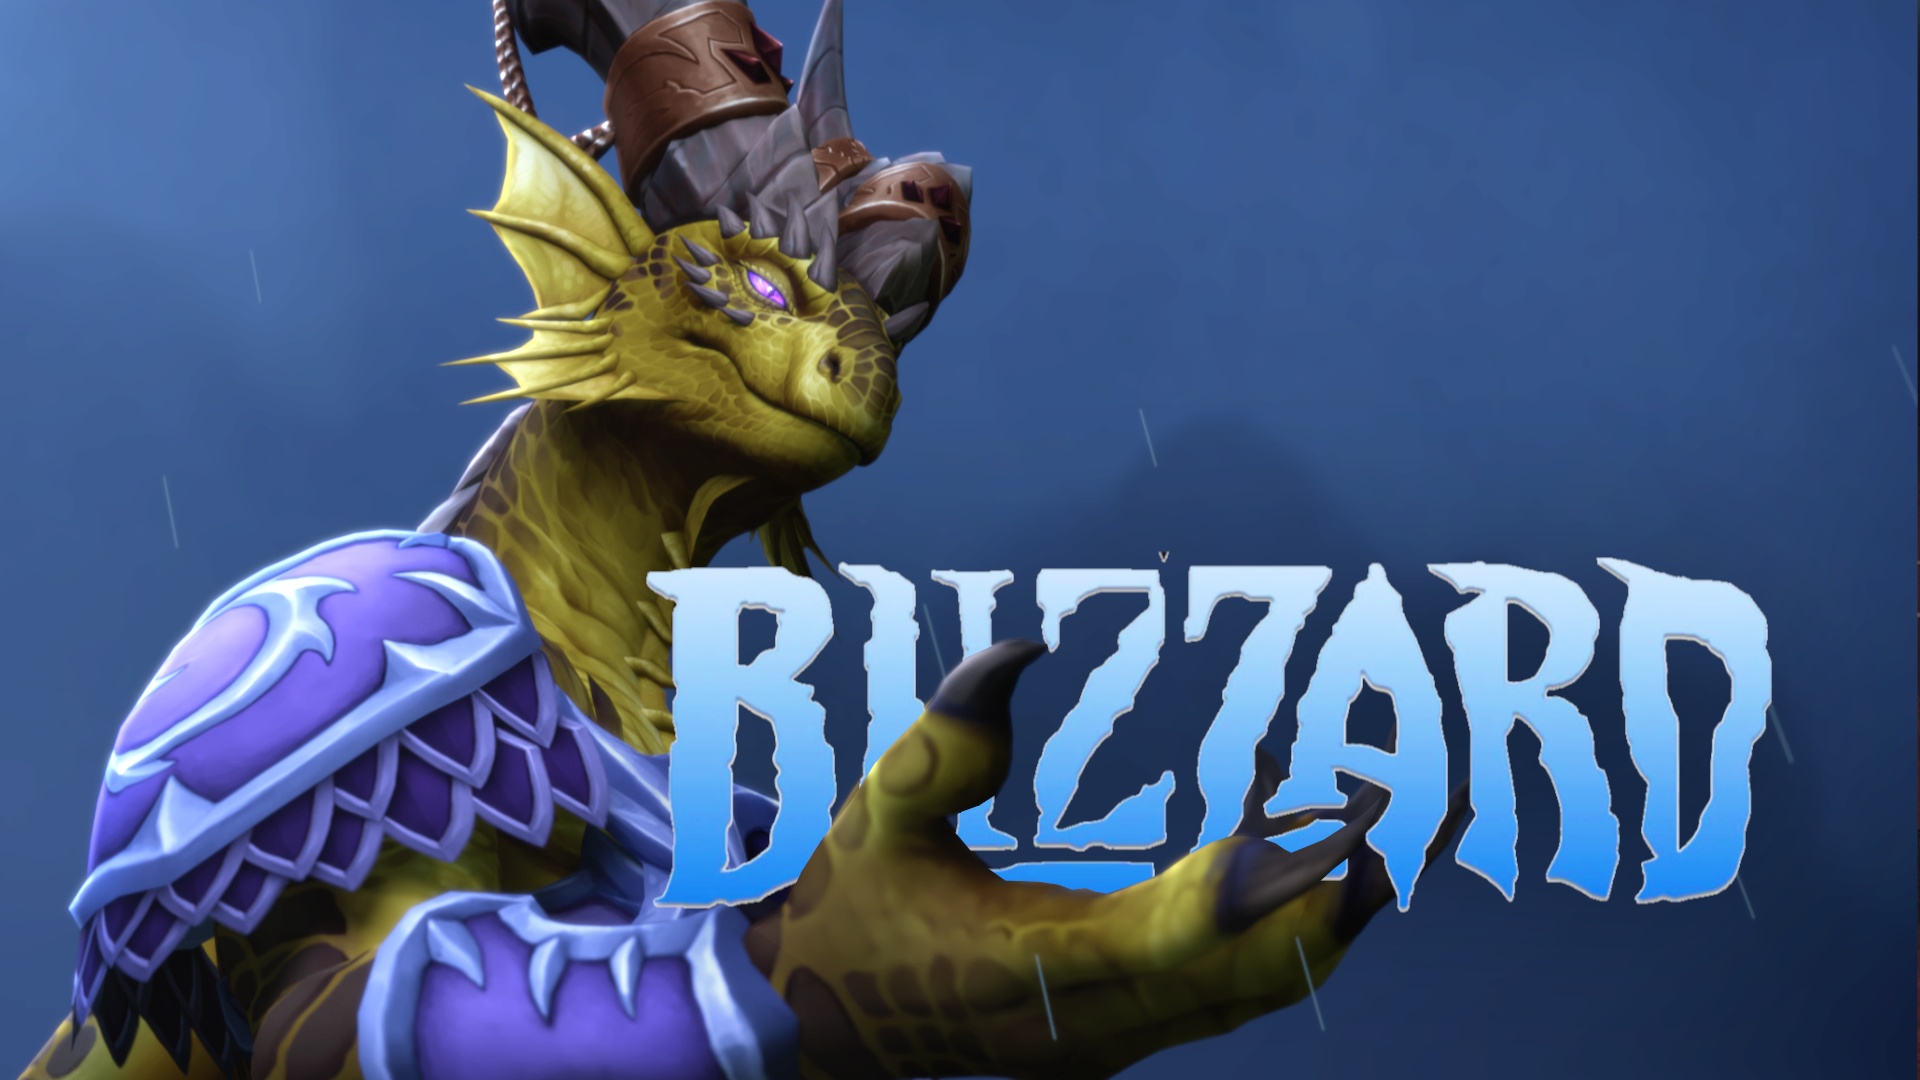 #Neue Führung bei Blizzard: Nach Microsoft-Kahlschlag übernimmt jetzt die frühere CoD-Chefin